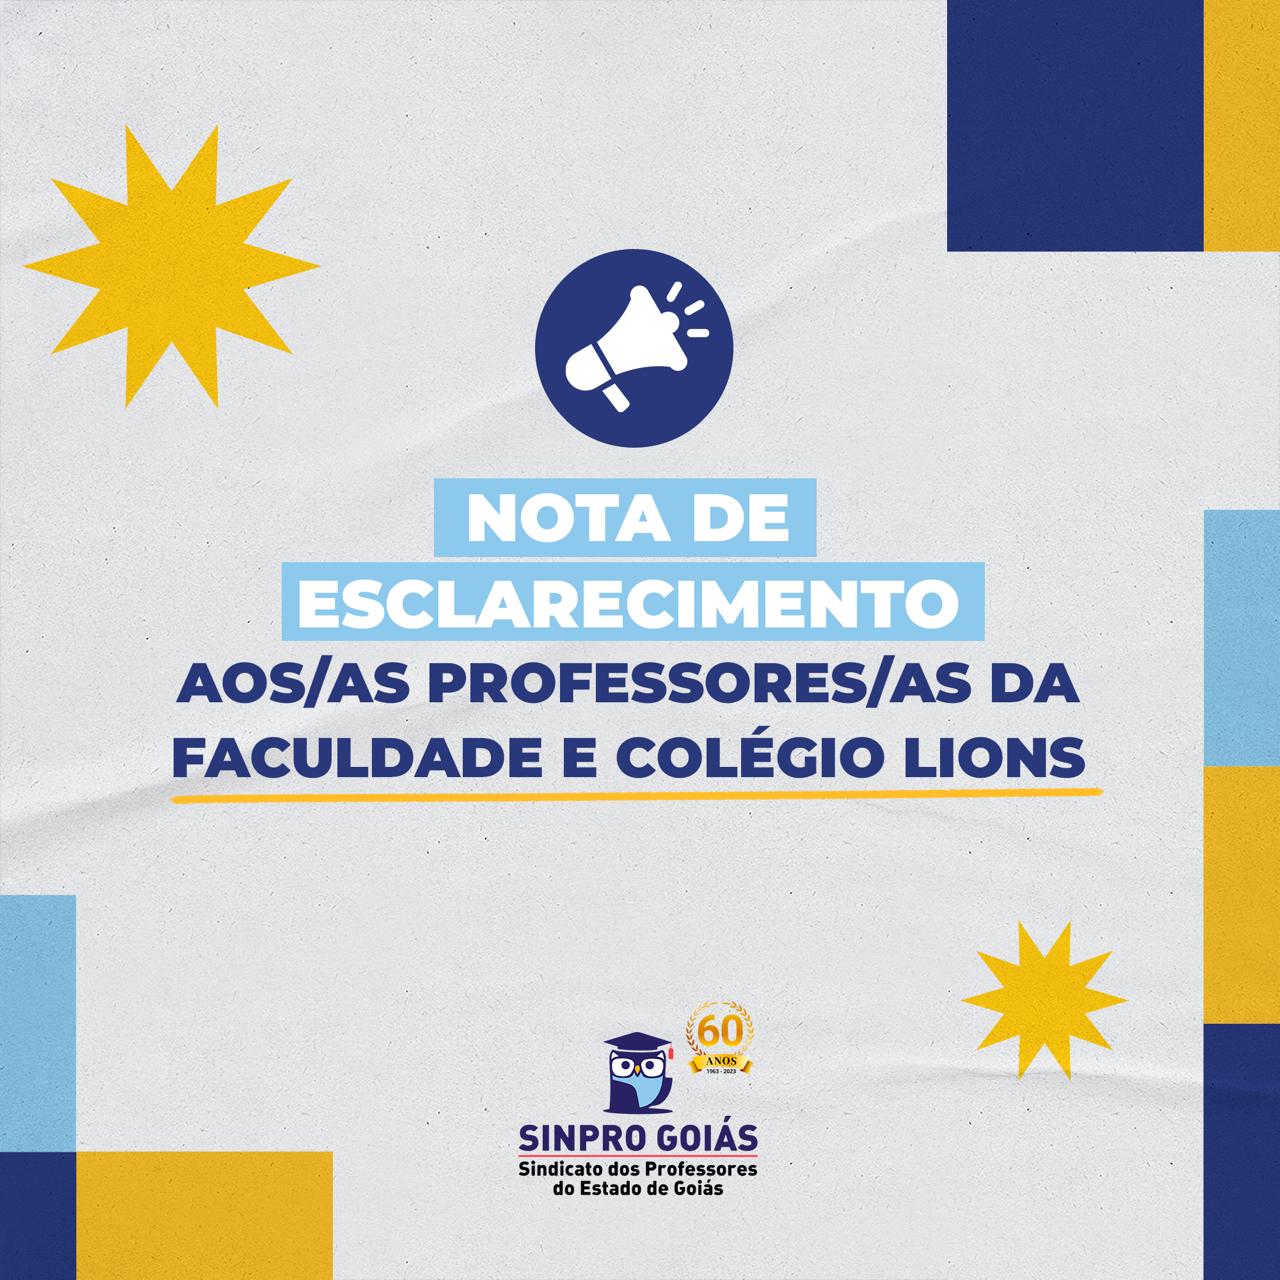 NOTA DE ESCLARECIMENTO AOS/AS PROFESSORES/AS DA FACULDADE E COLÉGIO LIONS